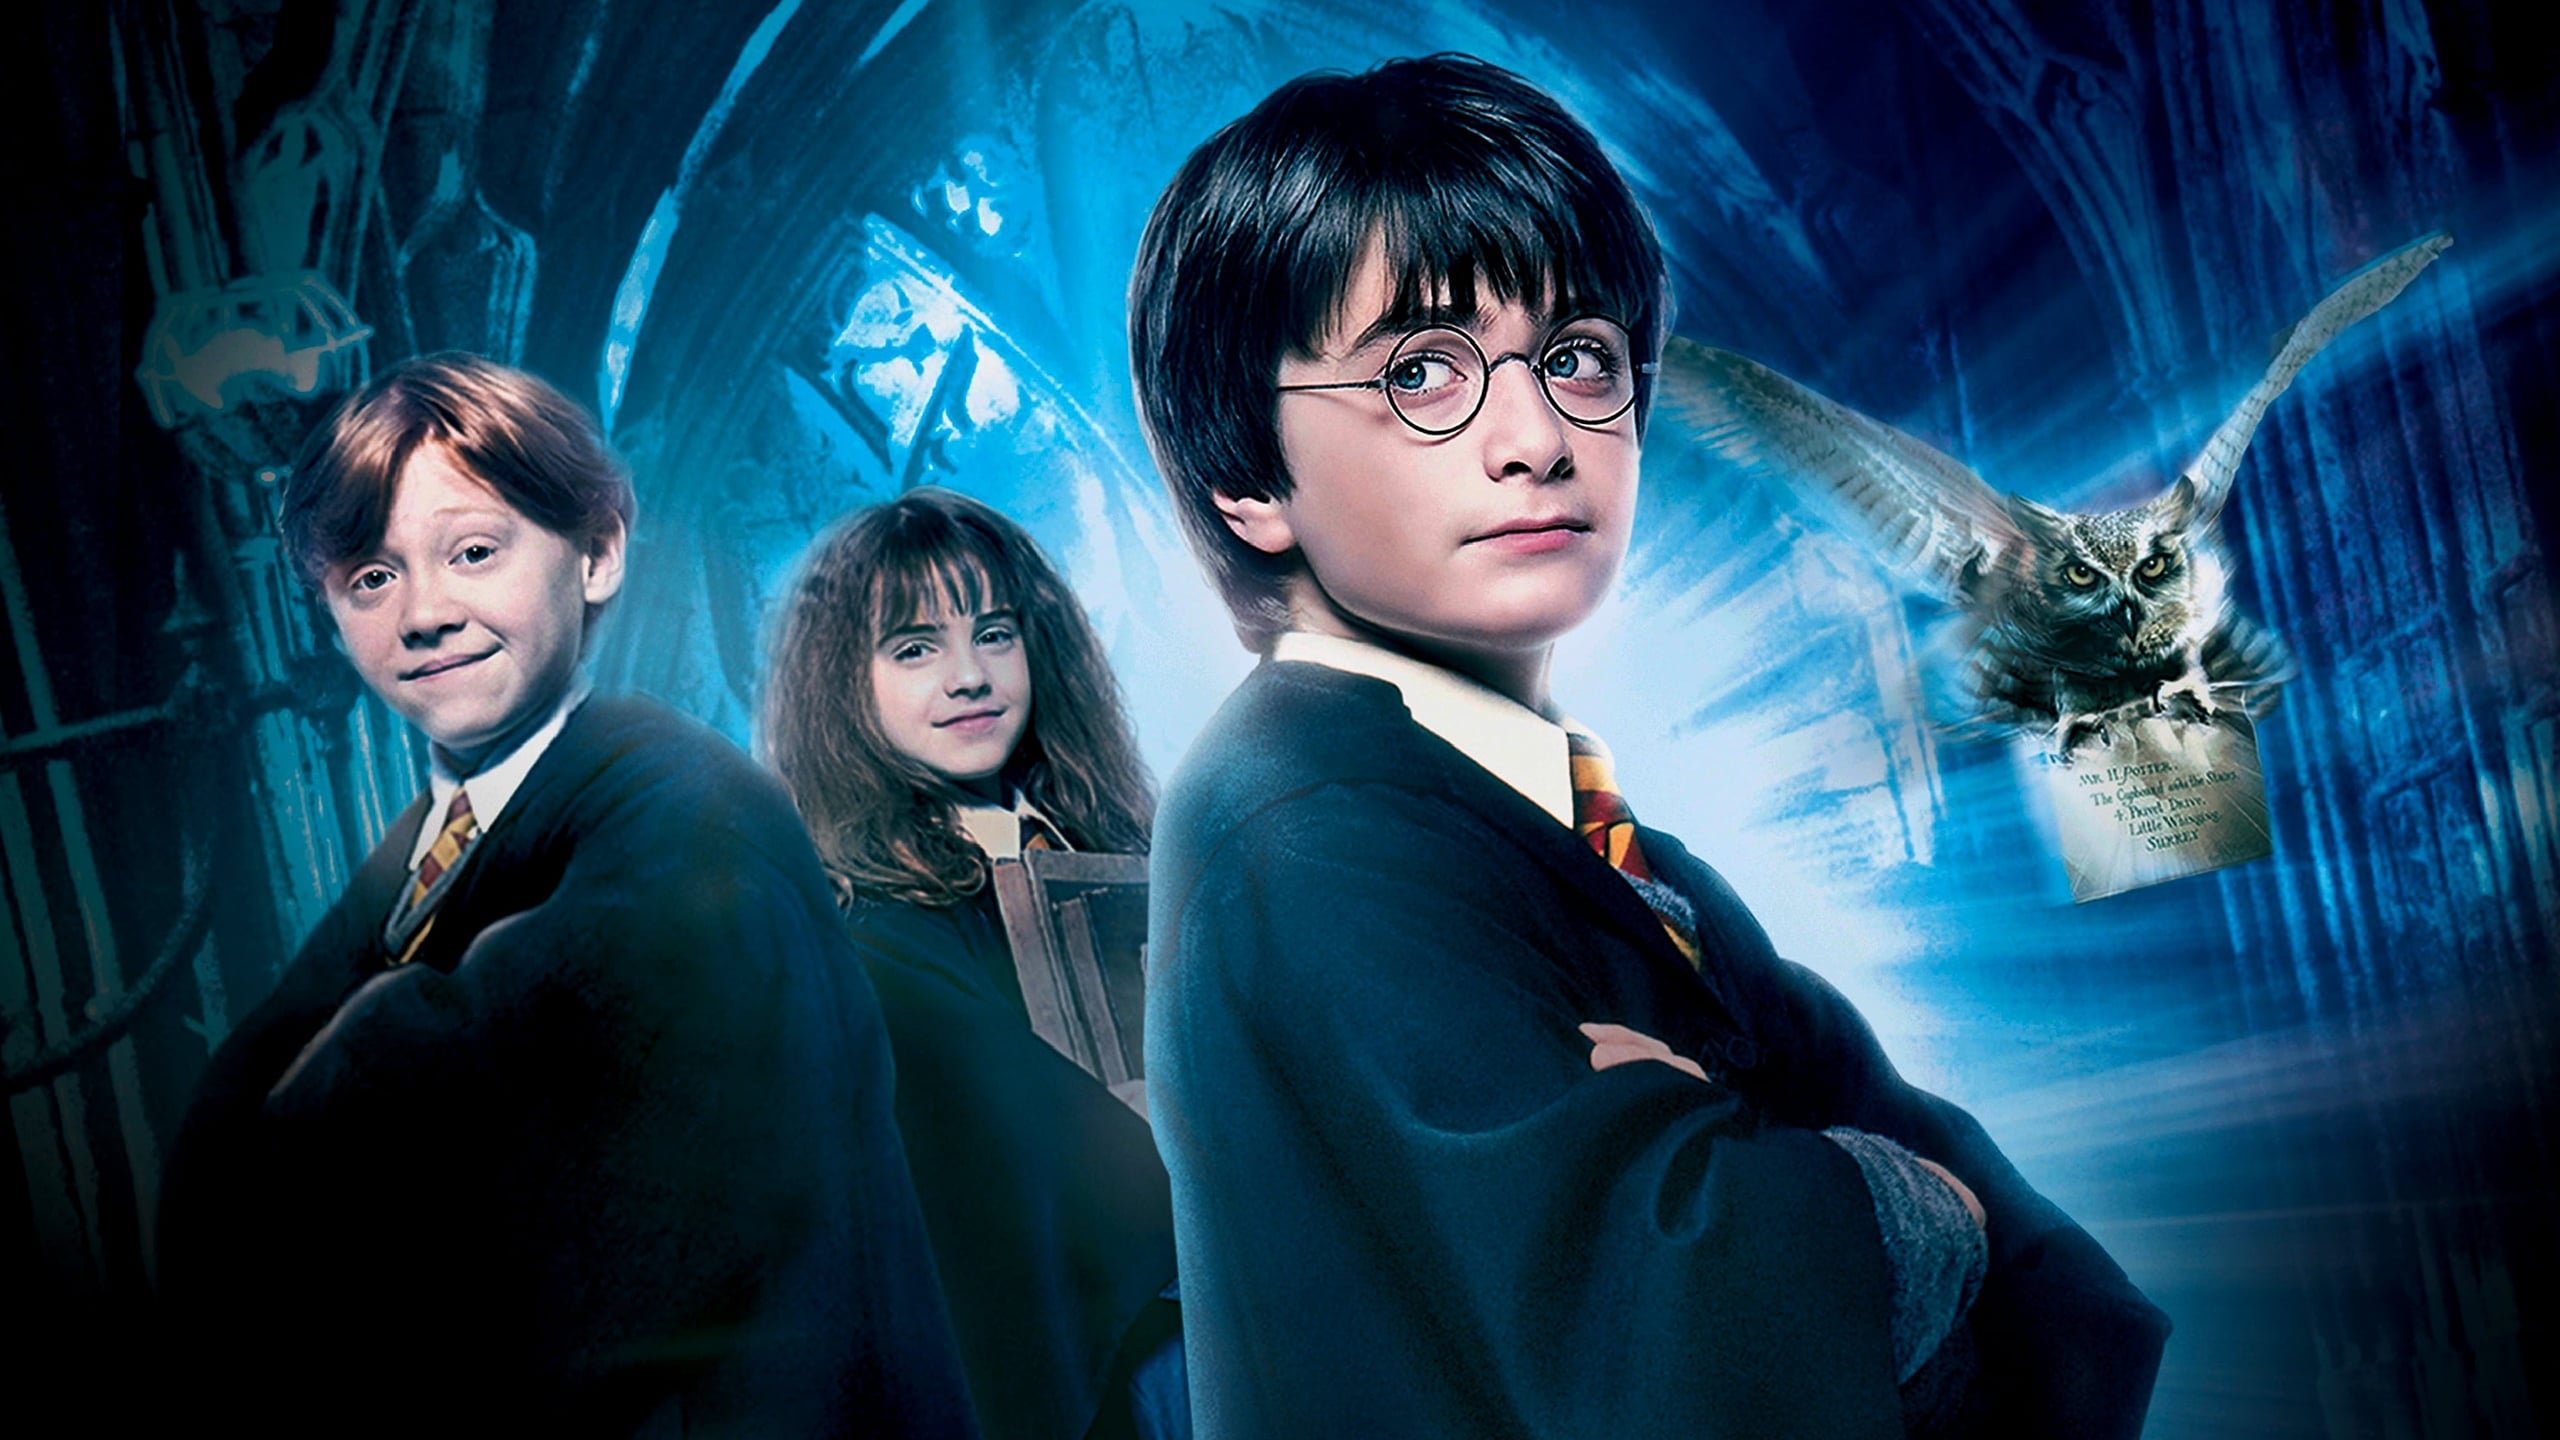 Harry Potter 1 y la piedra filosofal